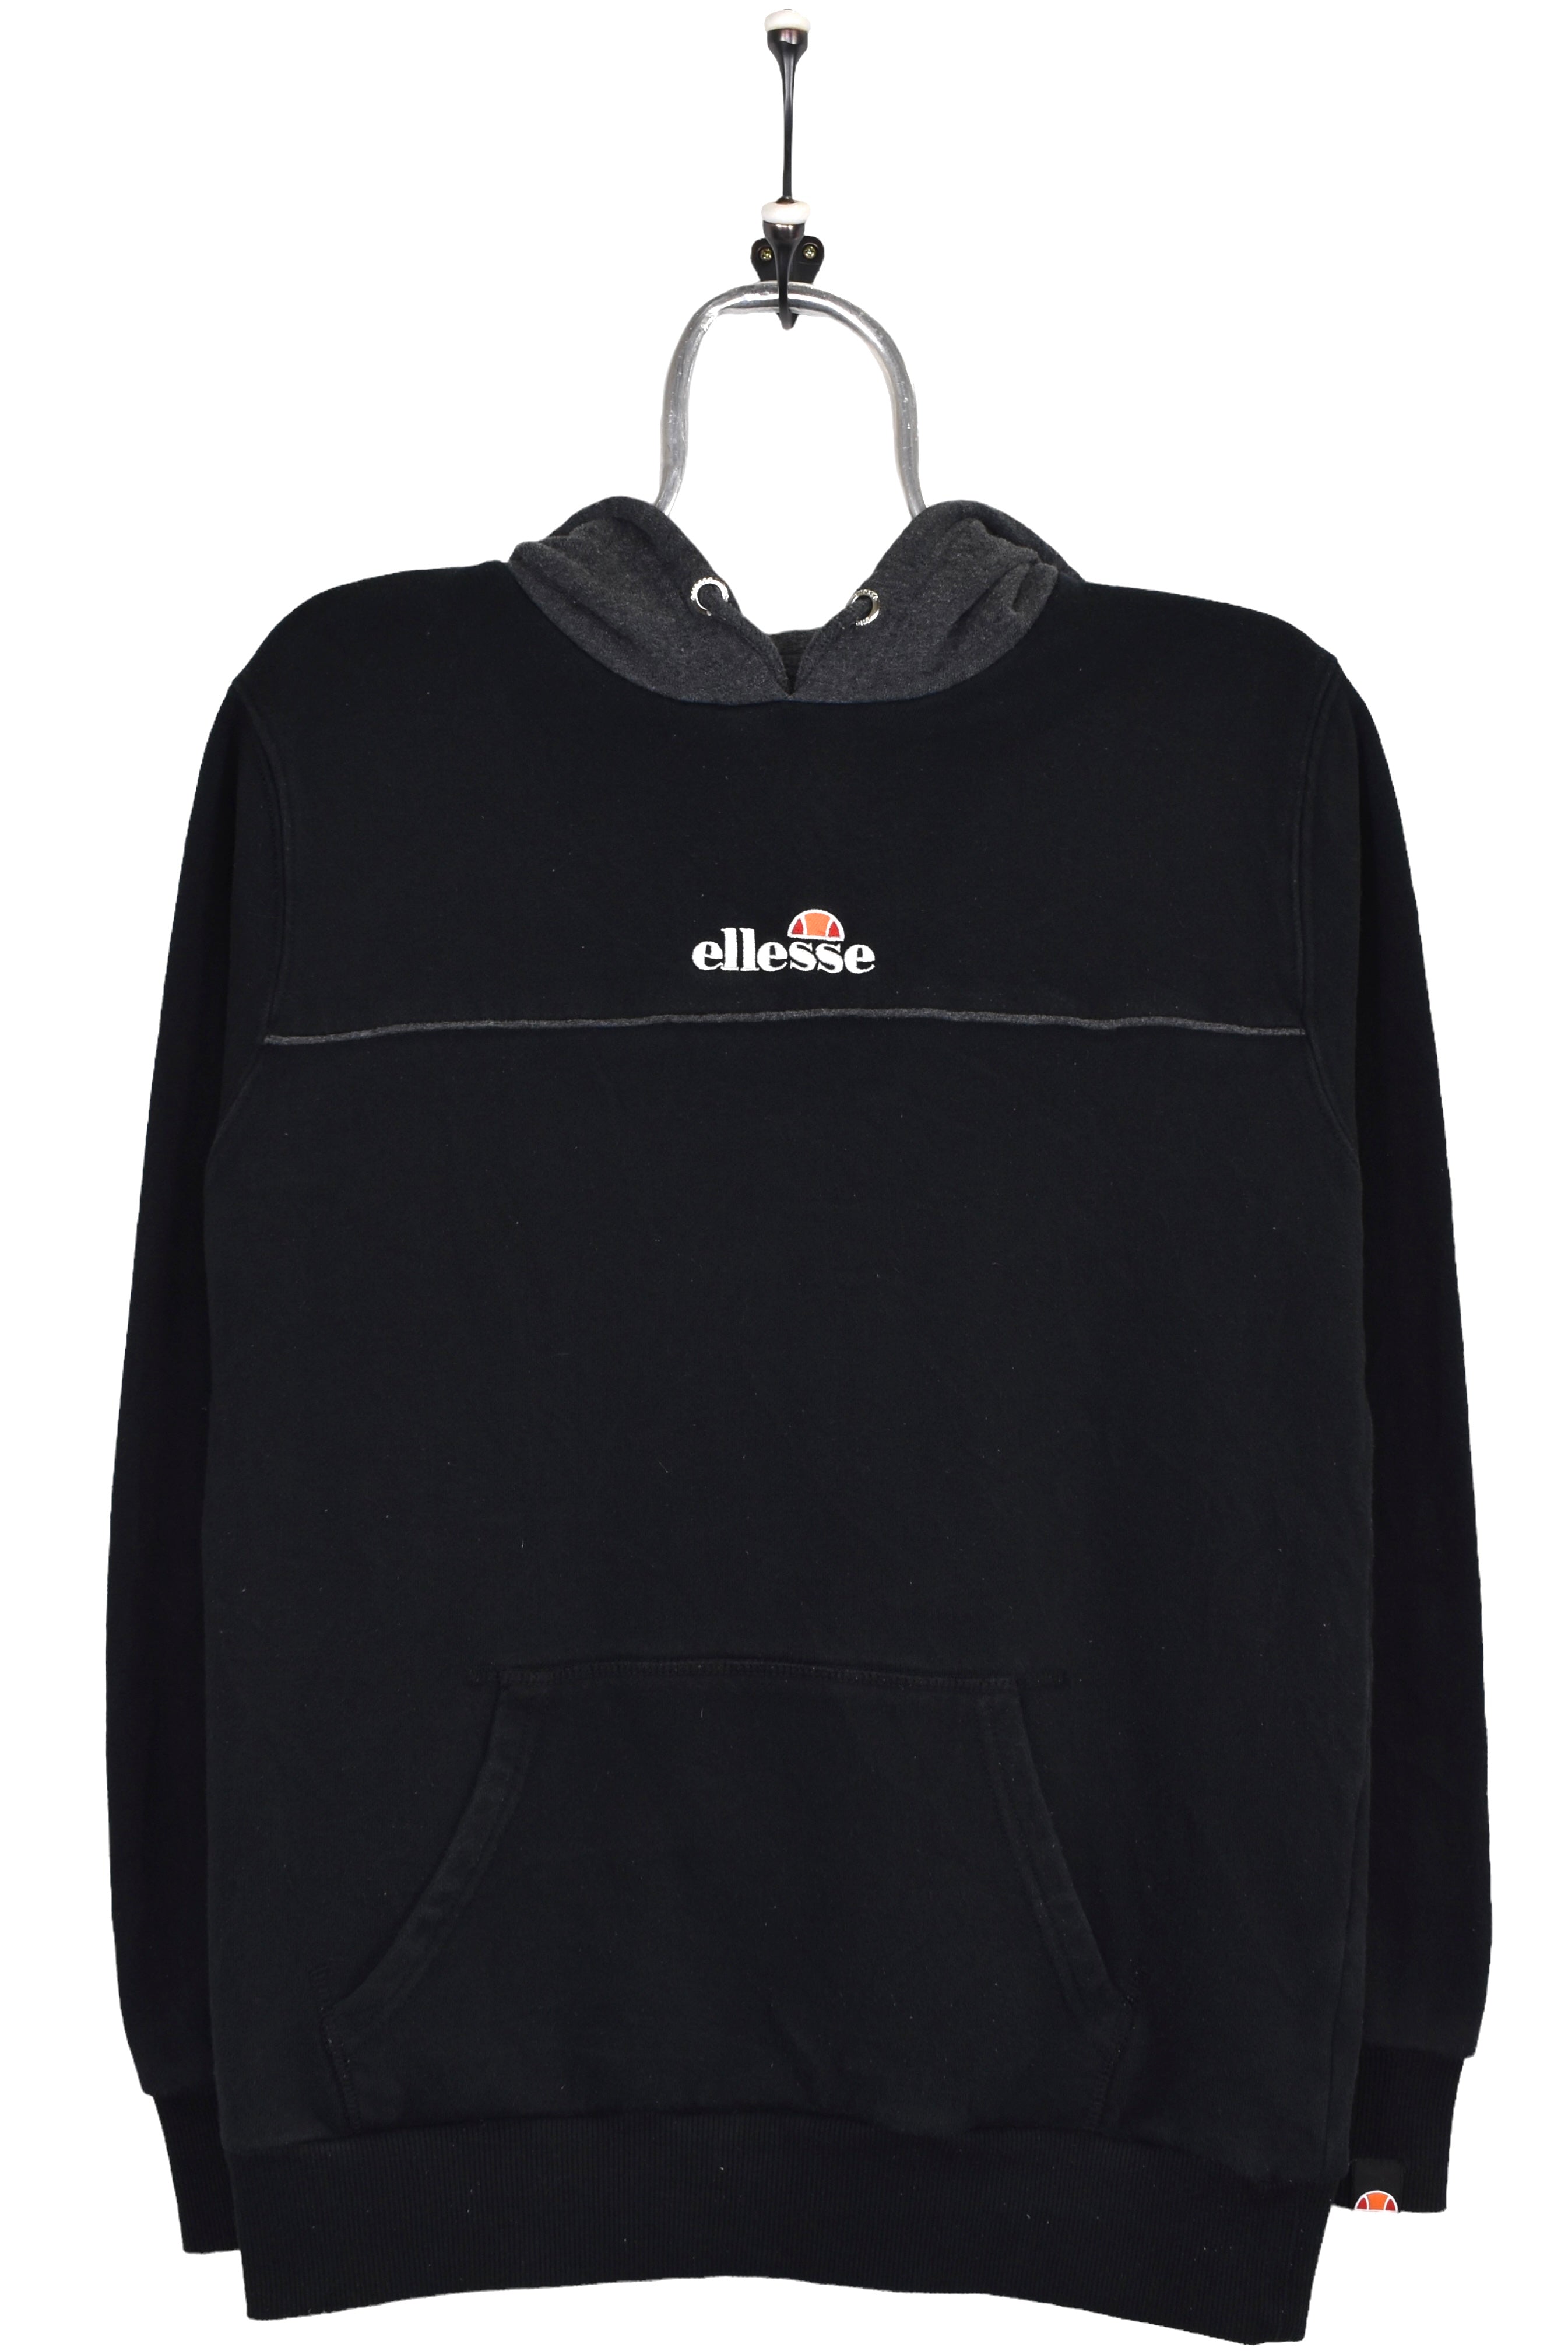 Vintage Ellesse hoodie, black embroidered sweatshirt - XS